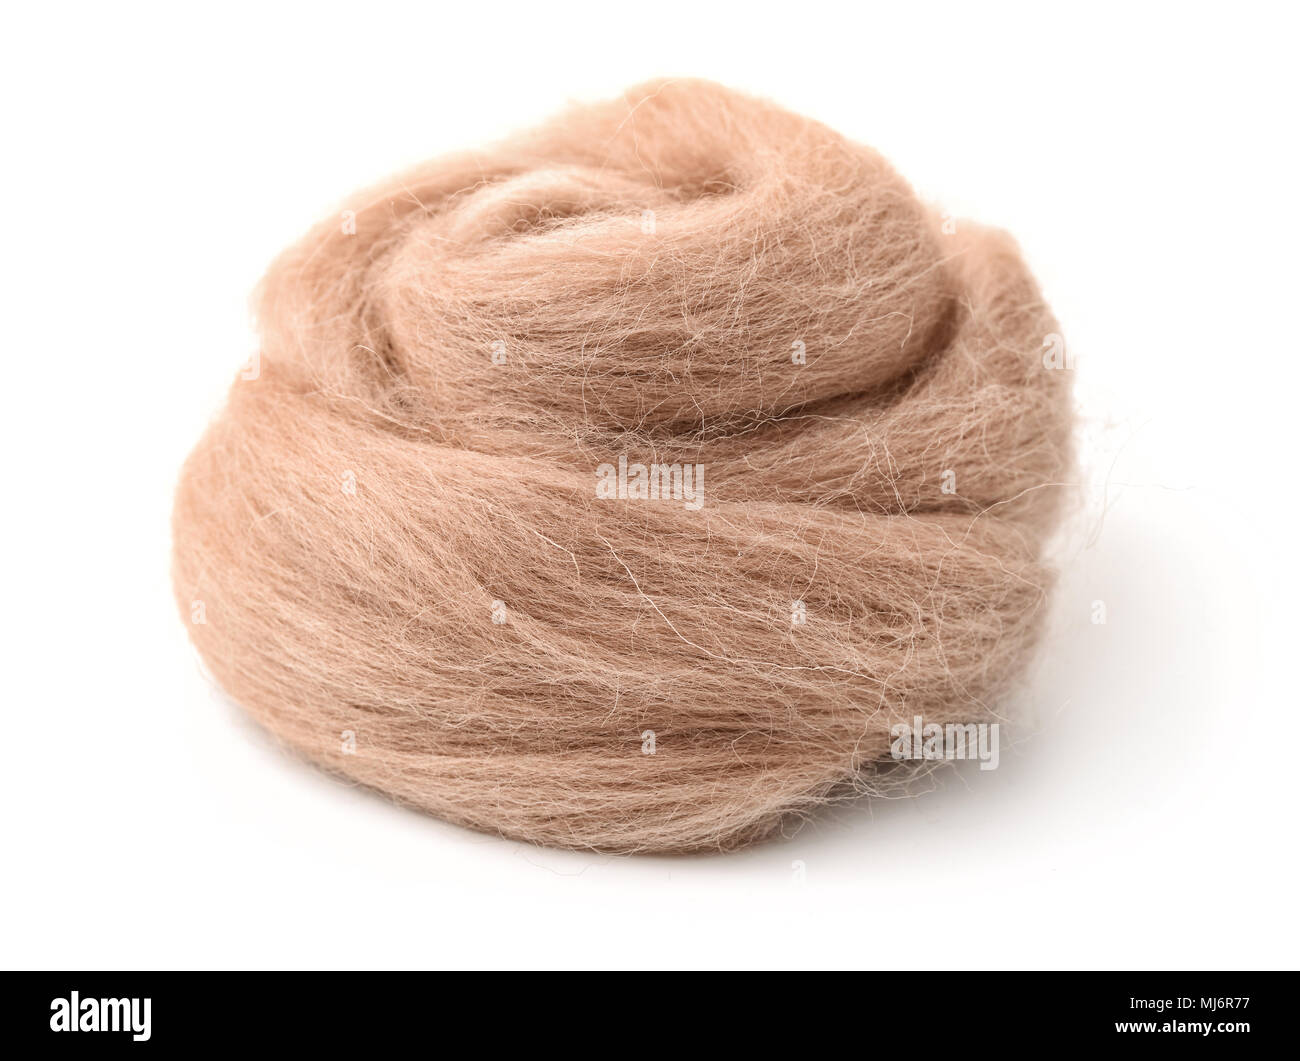 Hank de fil de laine beige isolated on white Banque D'Images